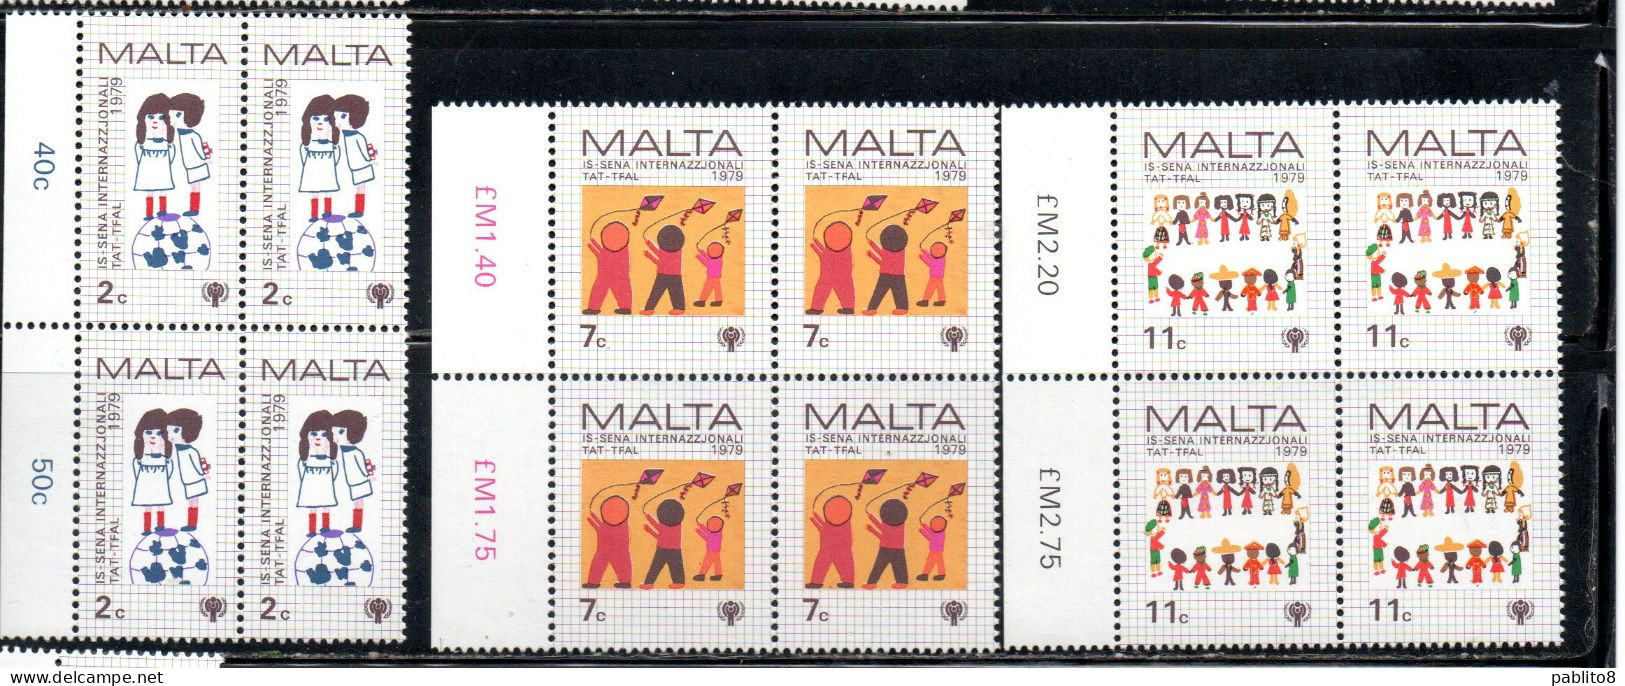 MALTA 1979 INTERNATIONAL CHILD YEAR GIORNATA INTERNAZIONALE DEL FANCIULLO COMPLETE SET SERIE COMPLETA BLOCK QUARTINA MNH - Malta